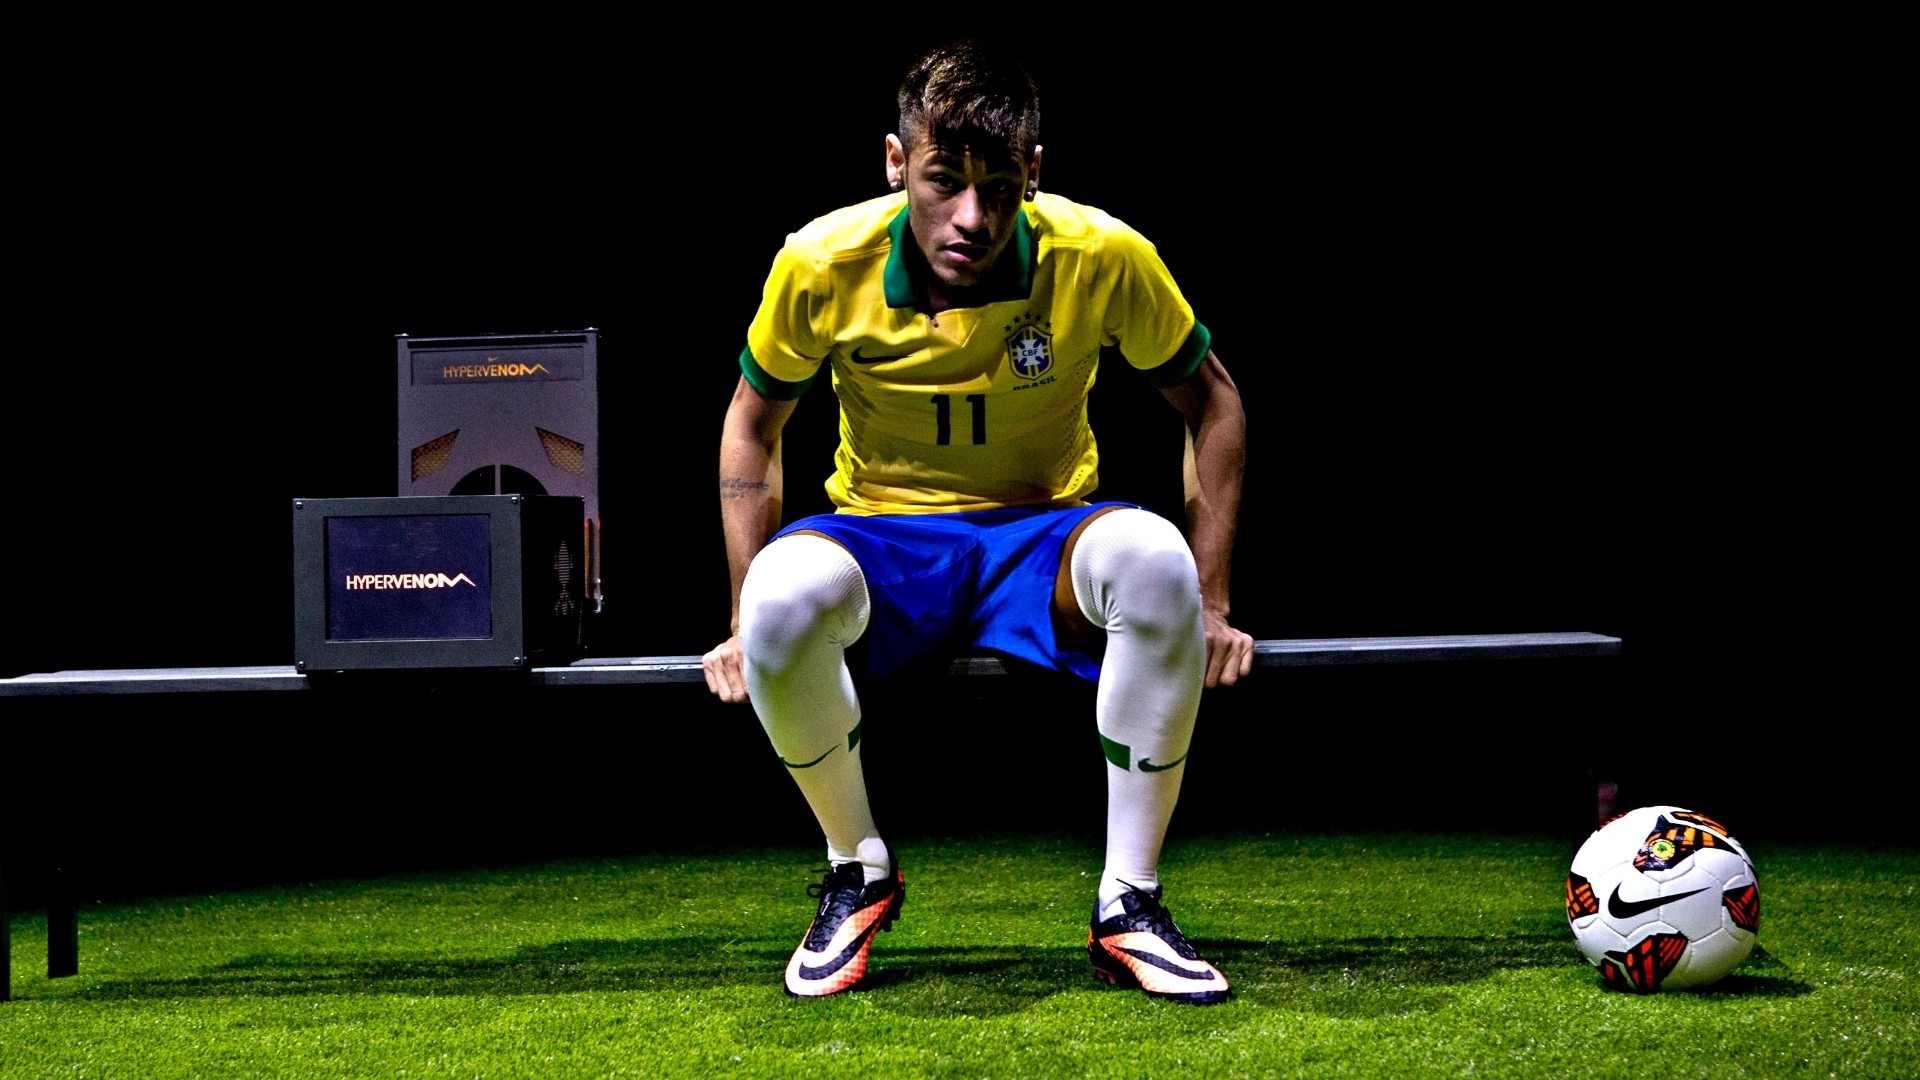 Neymar HD Wallpapers 20151920 x 1080